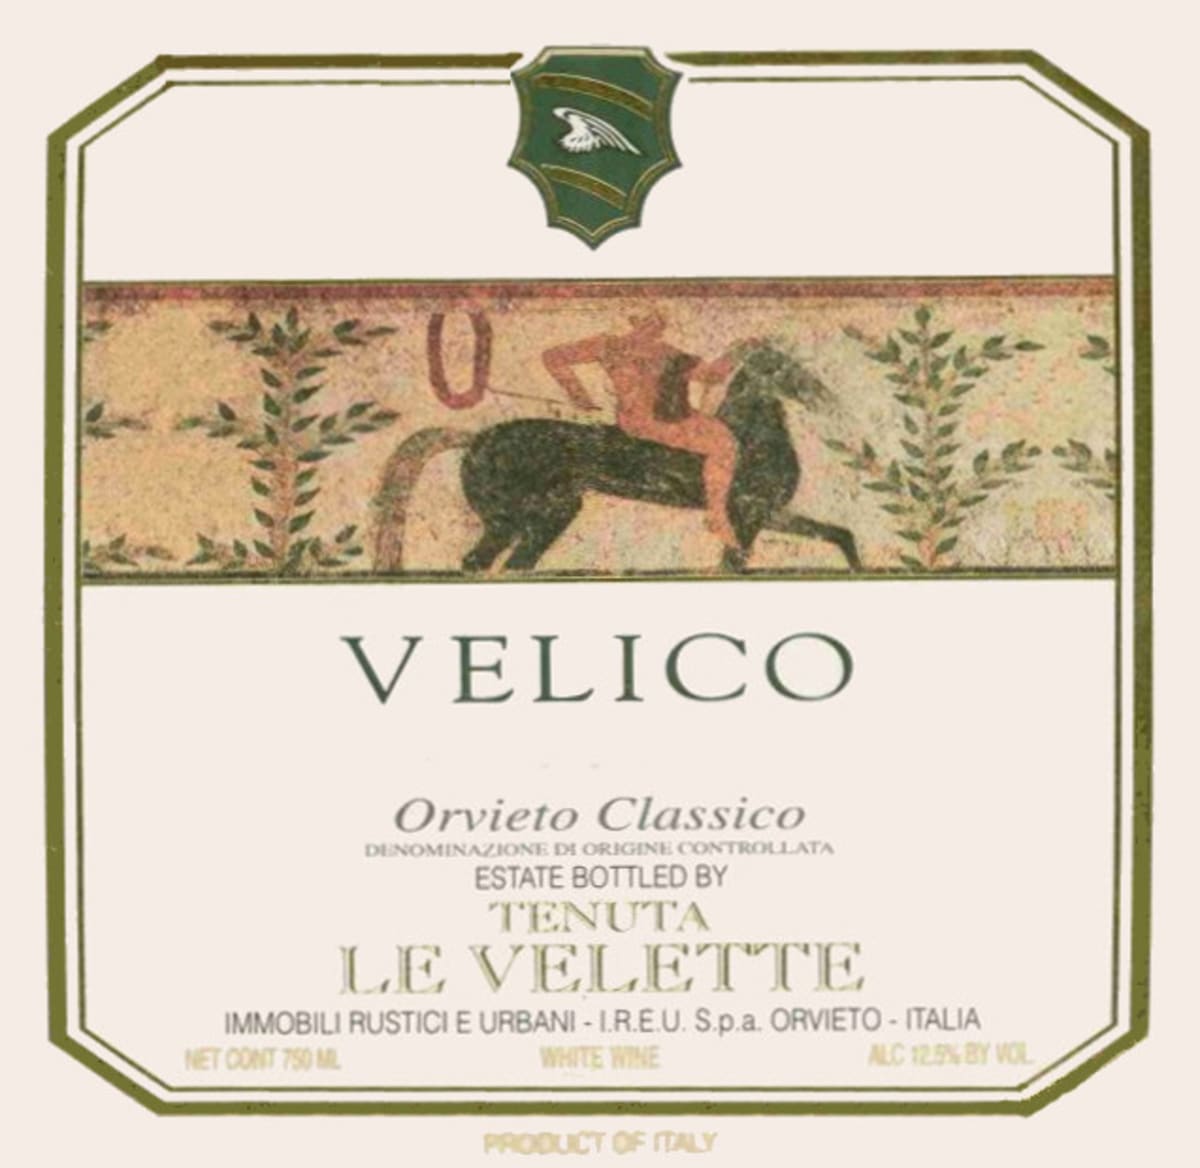 Le Velette Orvieto Classico Velico 2006 Front Label